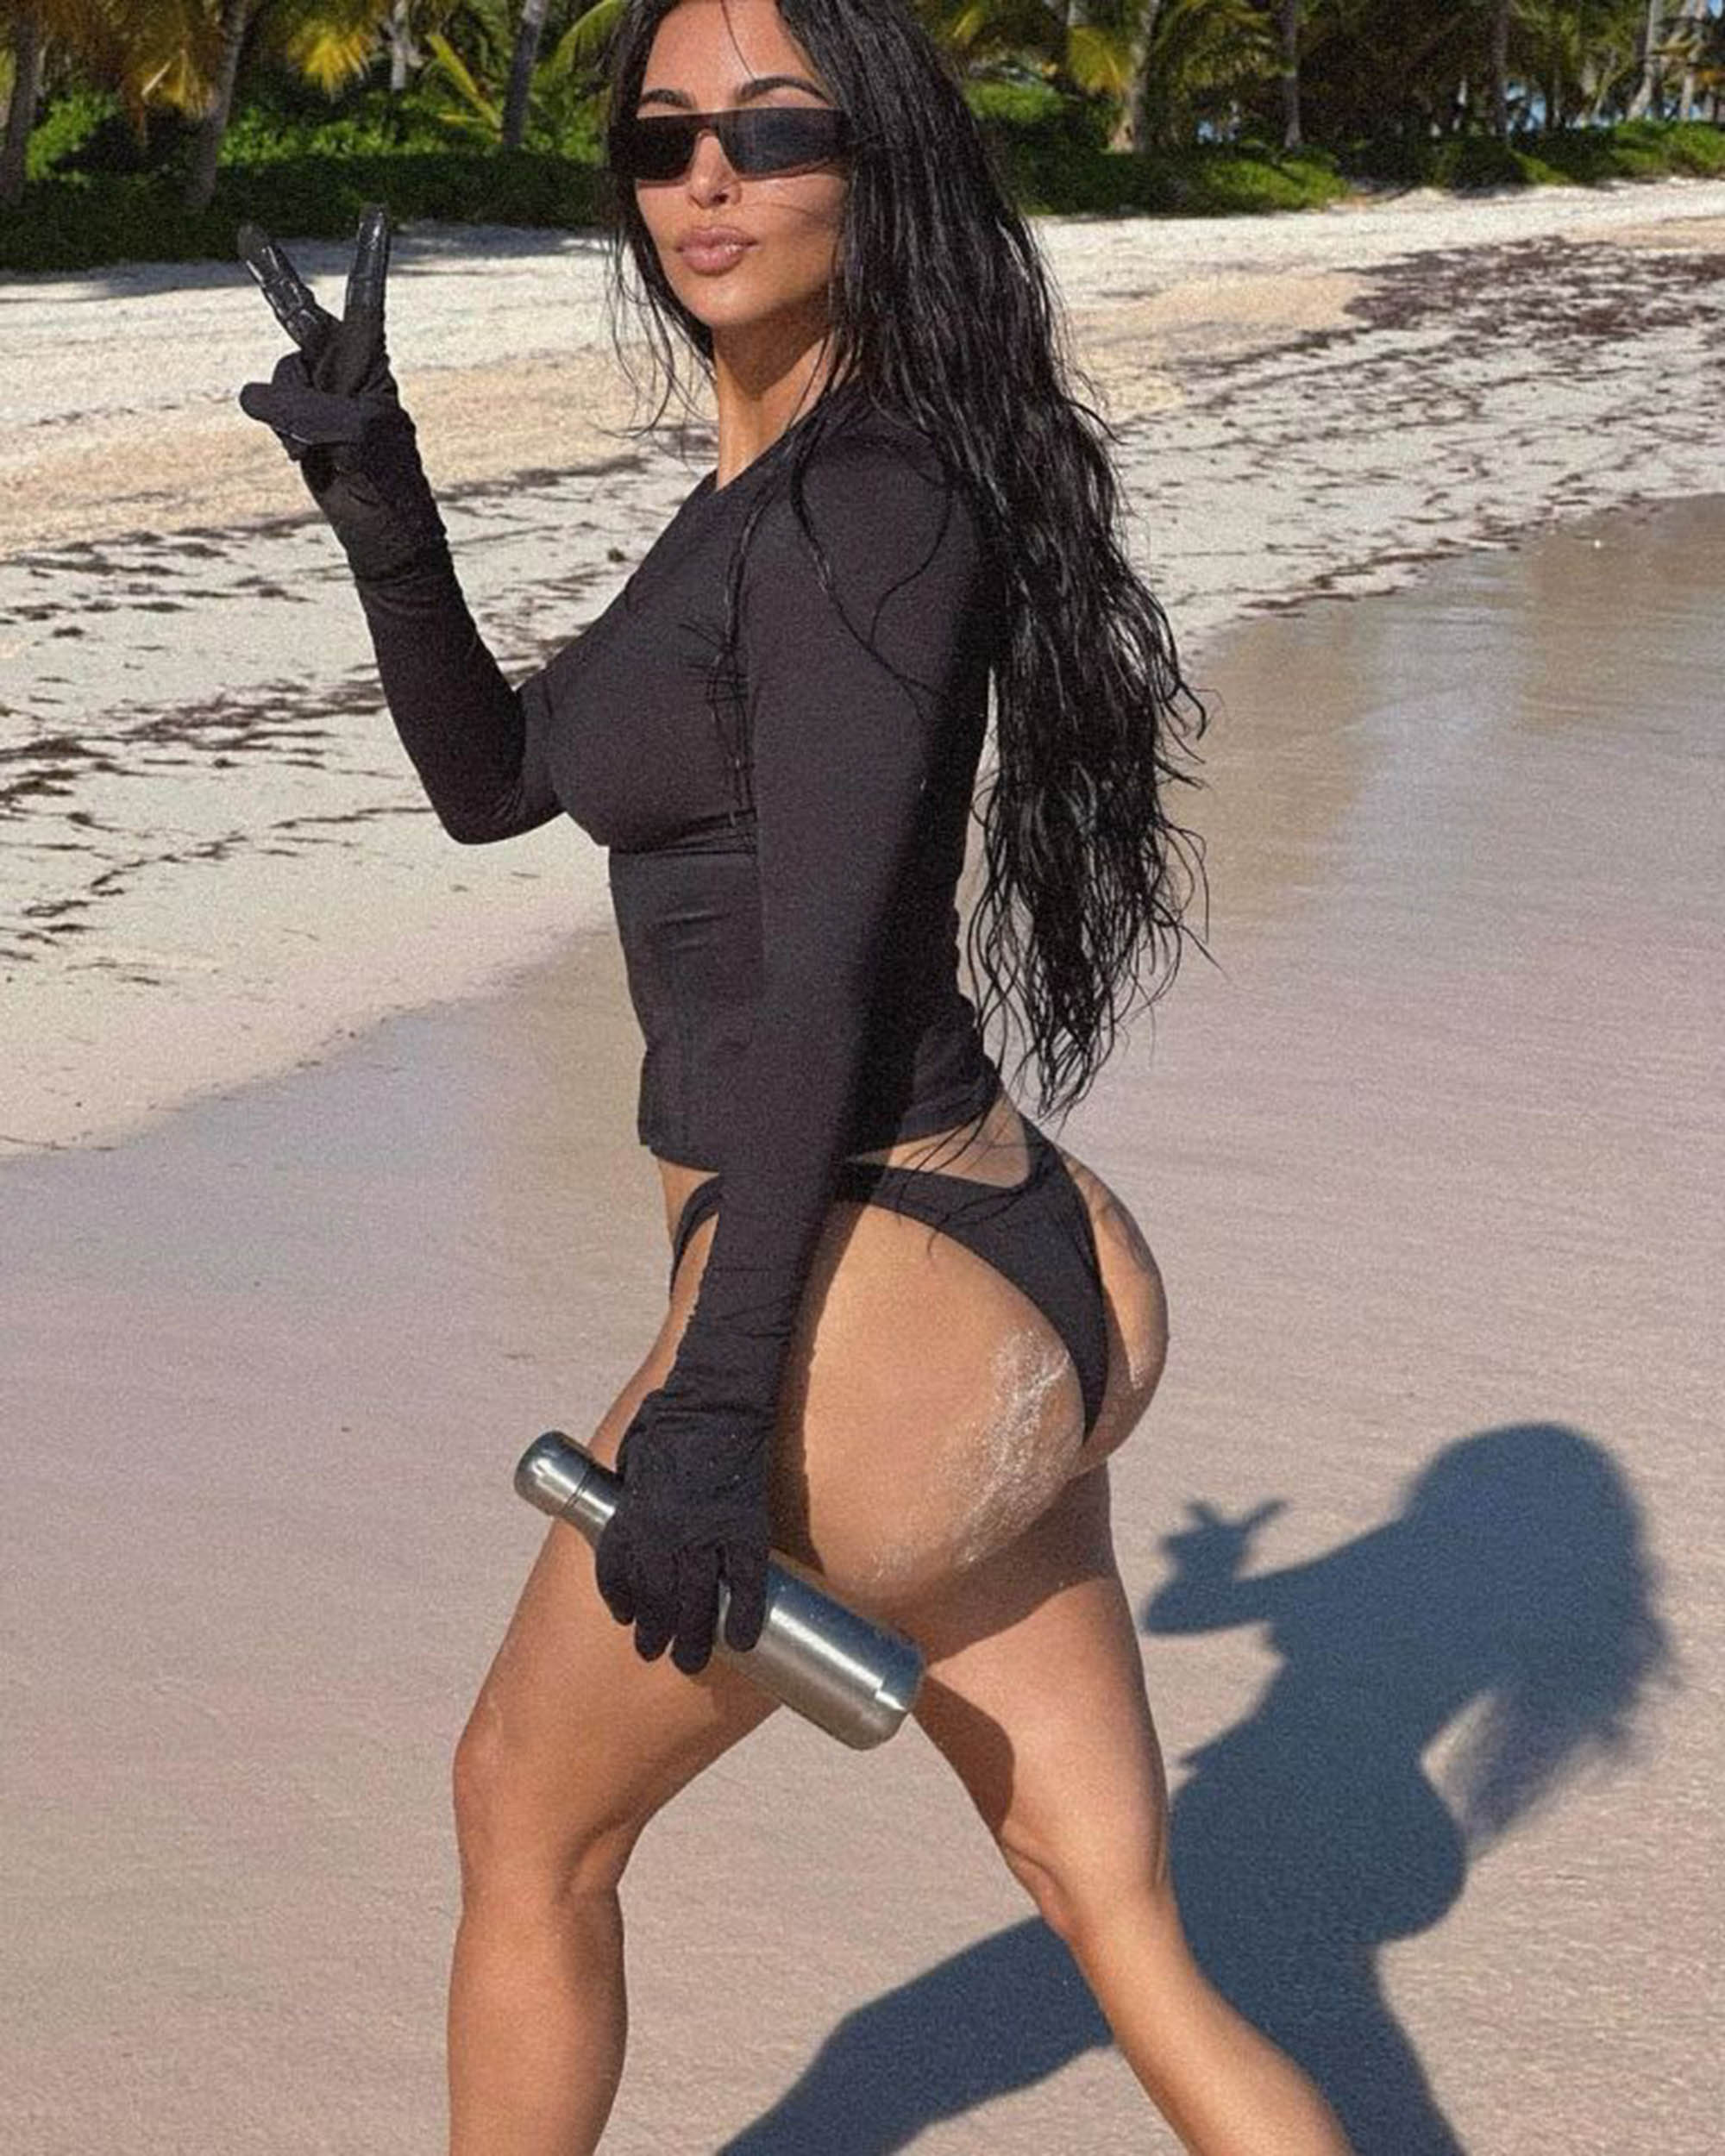 Kim Kardashian Diaper Ass langley bc